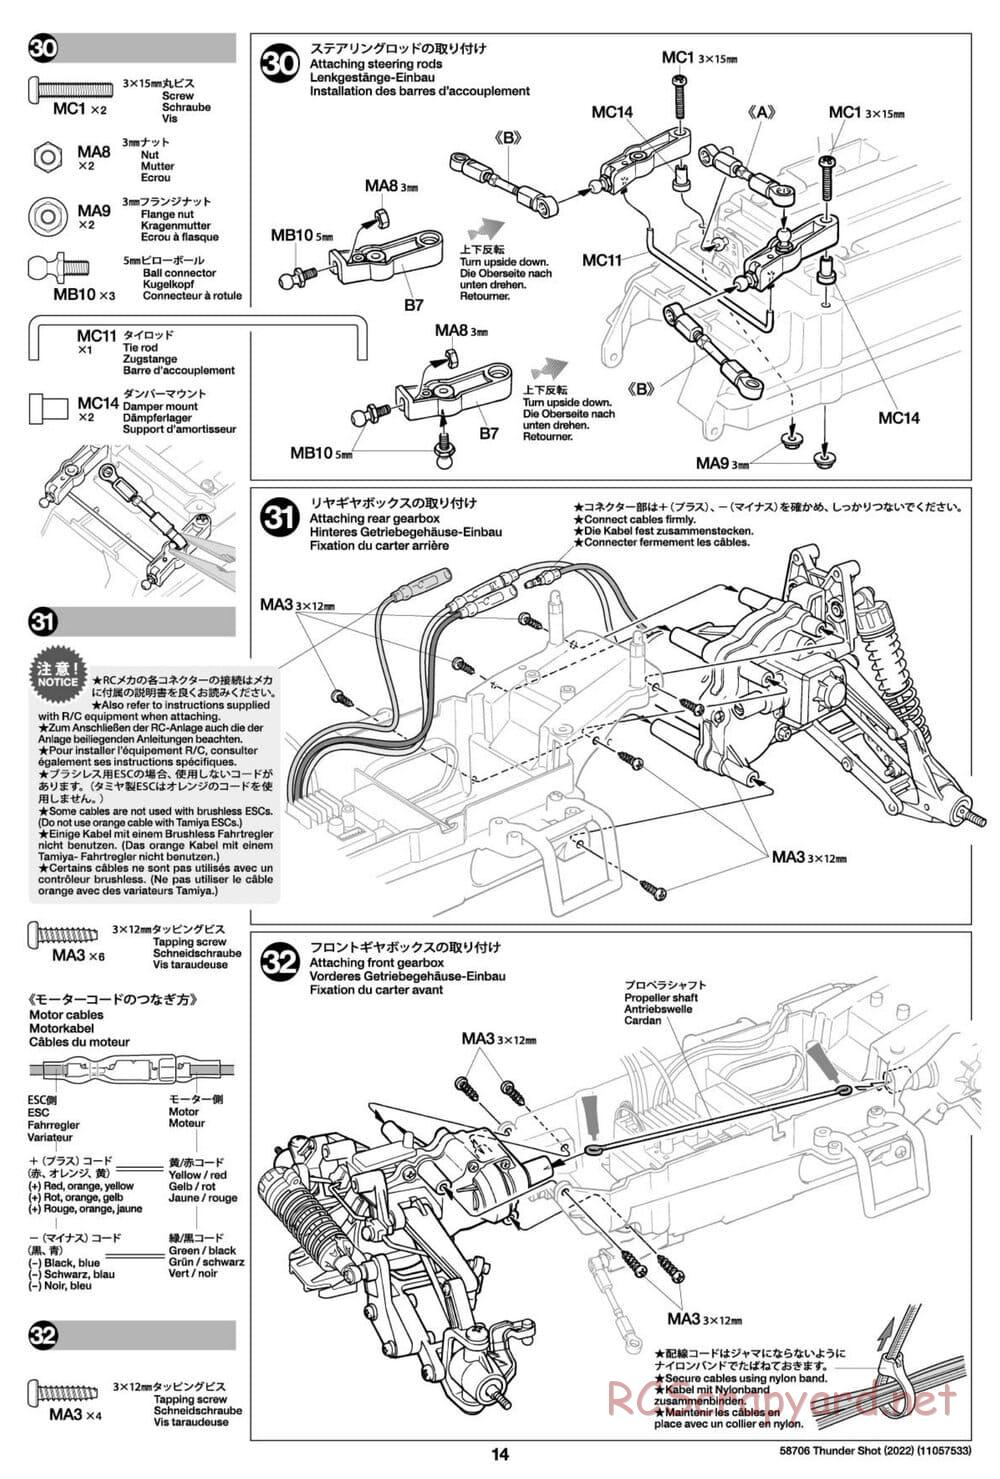 Tamiya - Thunder Shot (2022) - TS1/TS2 Chassis - Manual - Page 14